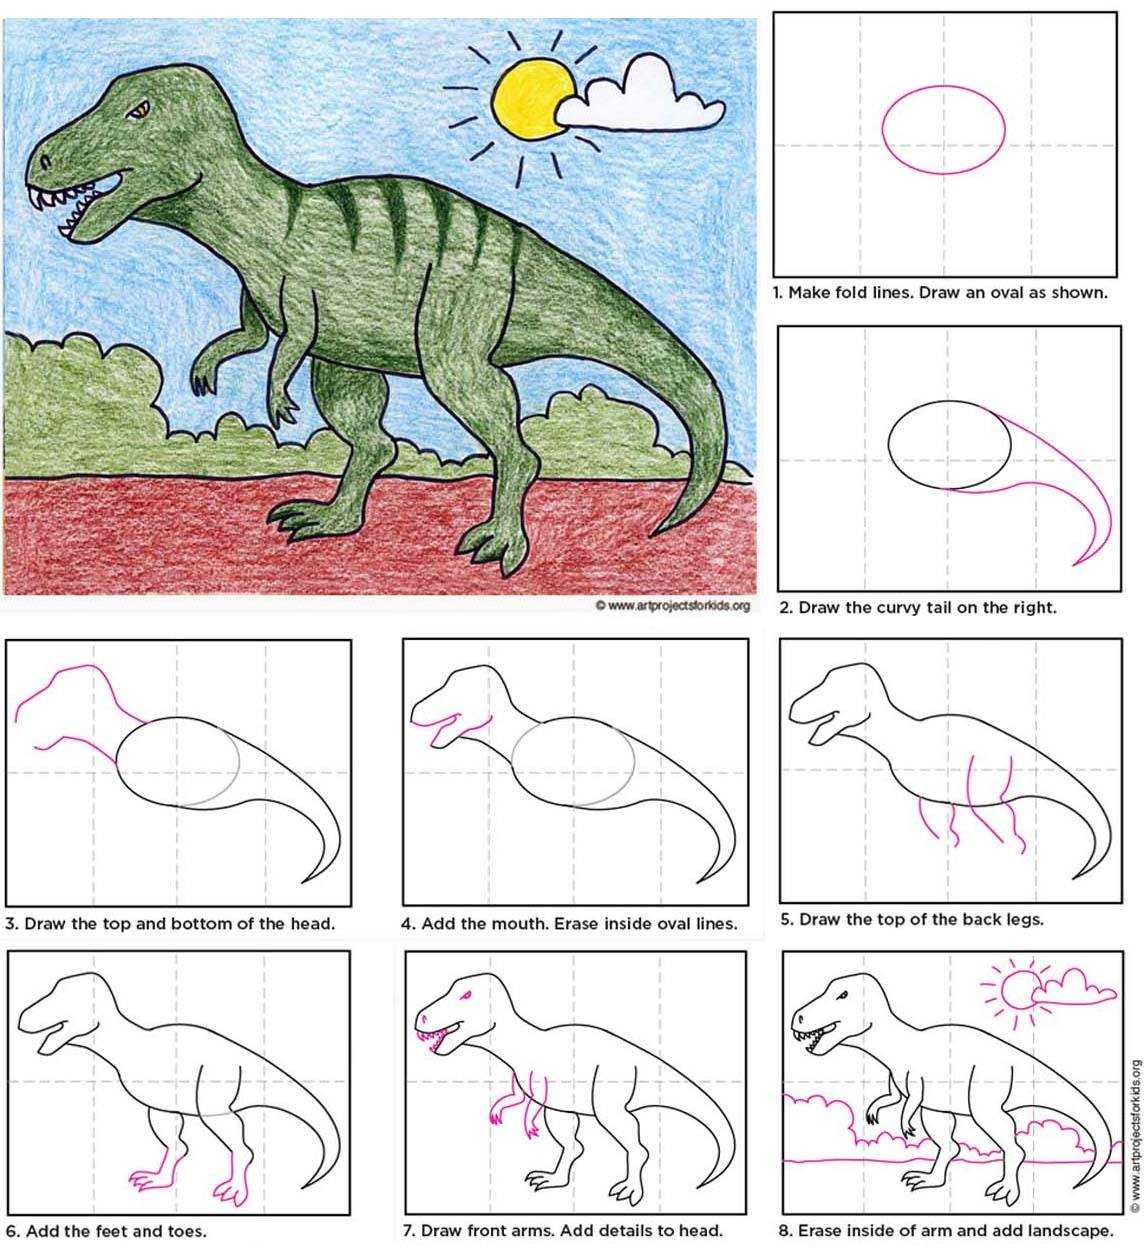 Как нарисовать динозавра поэтапно карандашом. топ вариантов для начинающих